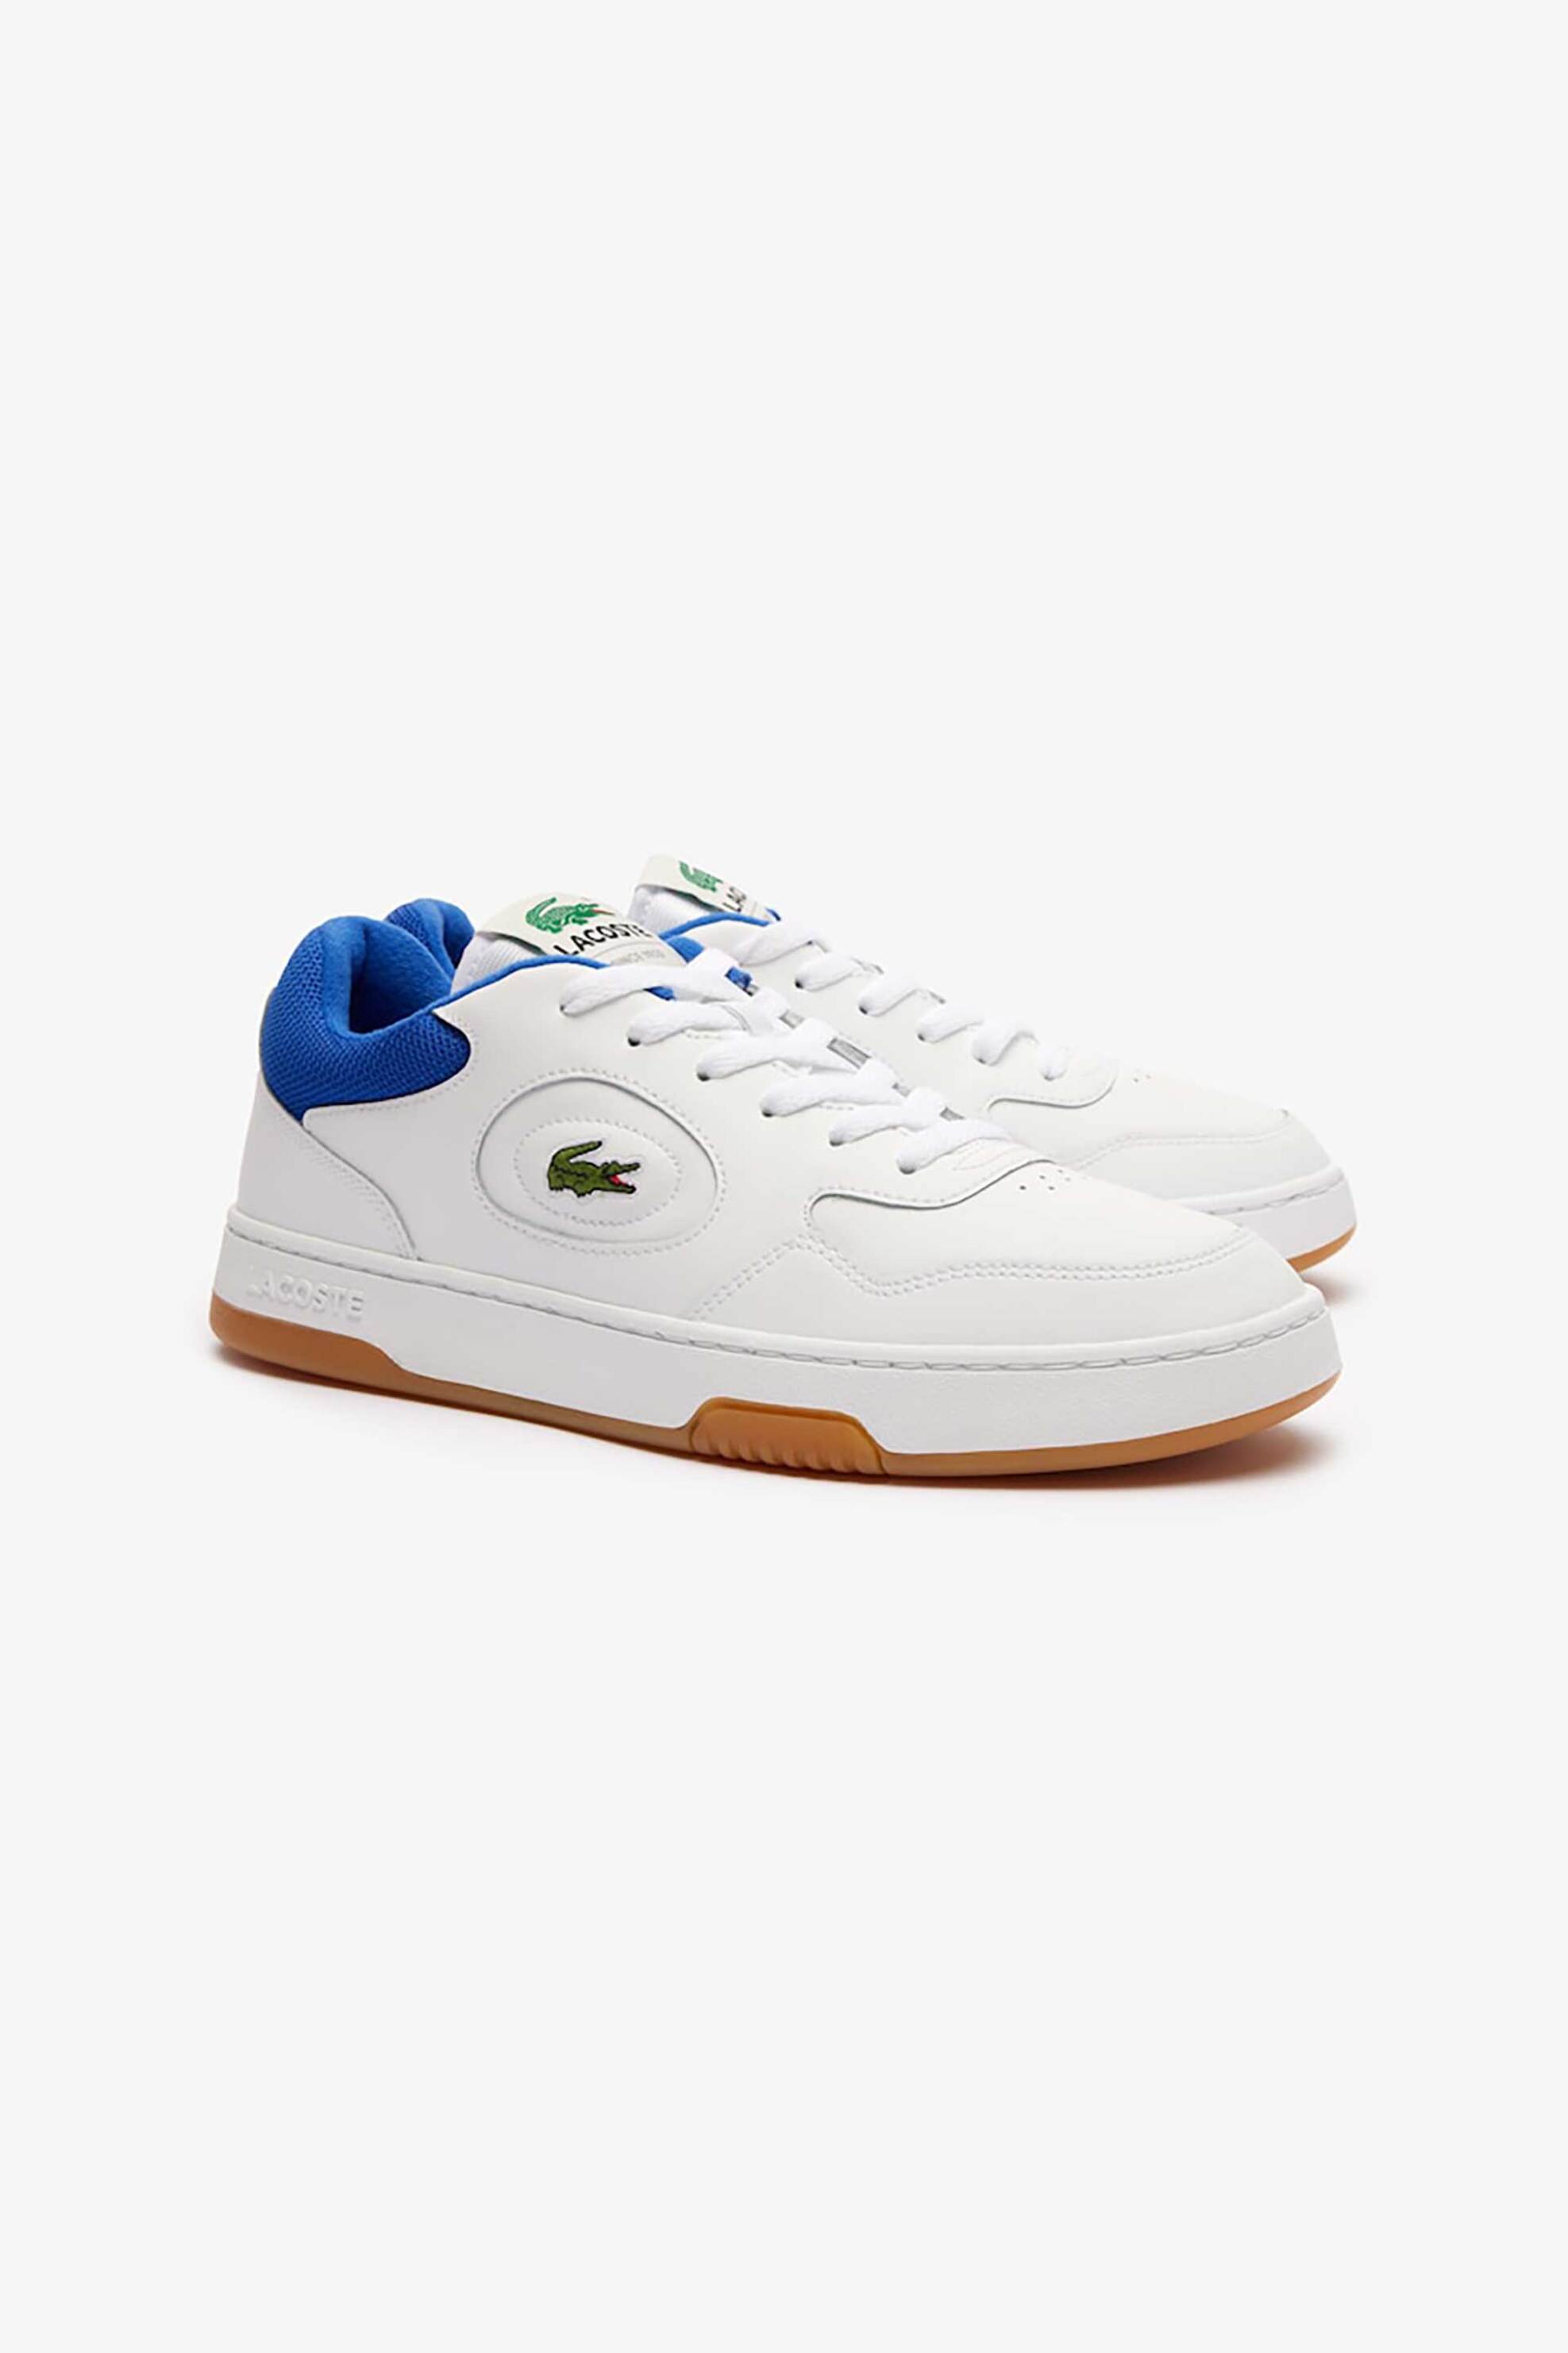 Ανδρική Μόδα > Ανδρικά Παπούτσια > Ανδρικά Sneakers Lacoste ανδρικά δερμάτινα sneakers "Lineset" - 47SMA00605T9 Λευκό